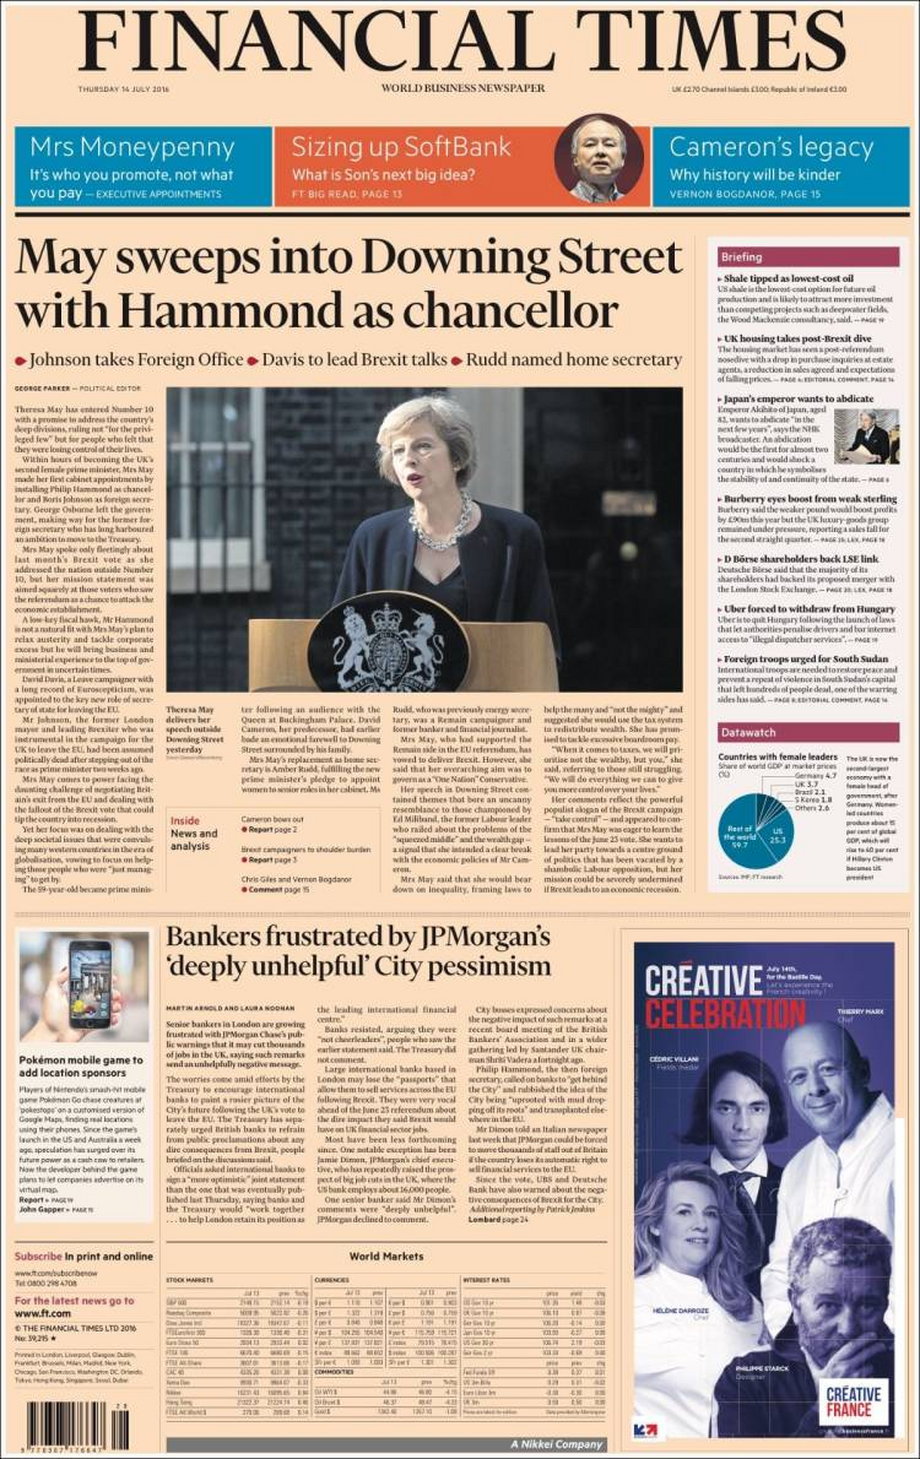 Financial Times: "May przejmuje Downing Street z Hammondem jako ministrem skarbu" i wymienia pozostałe nominacje